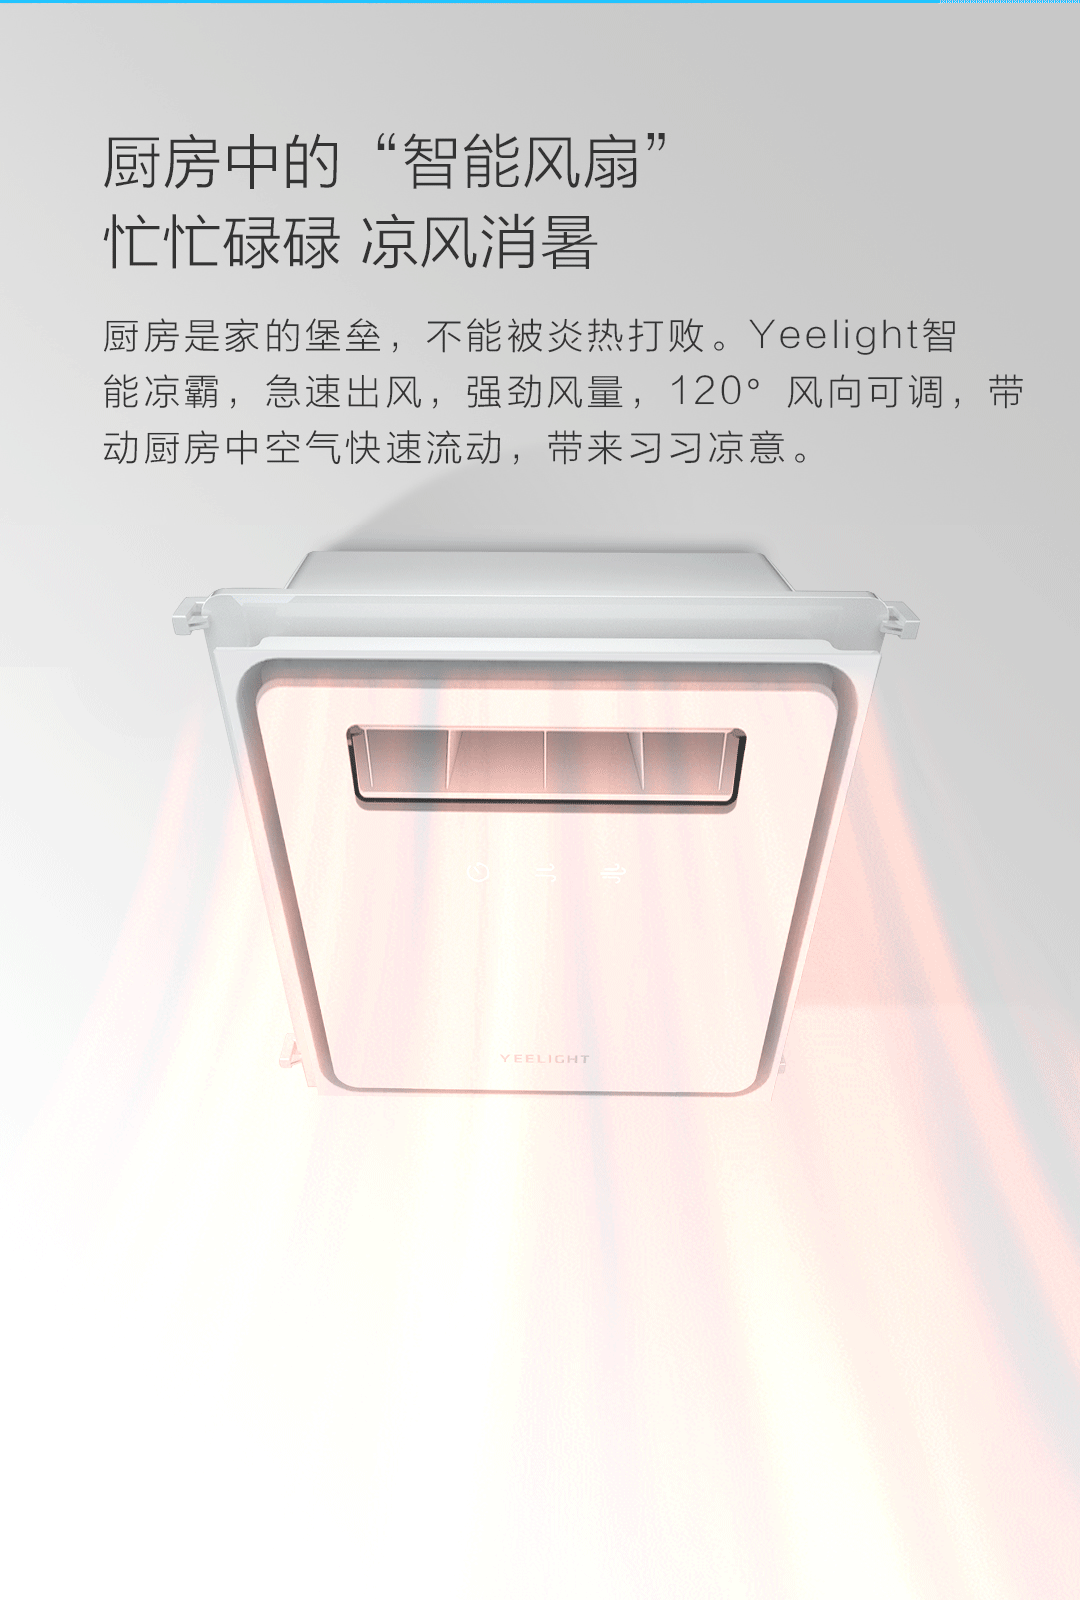 Xiaomi Yeelight Smart Cooler Set